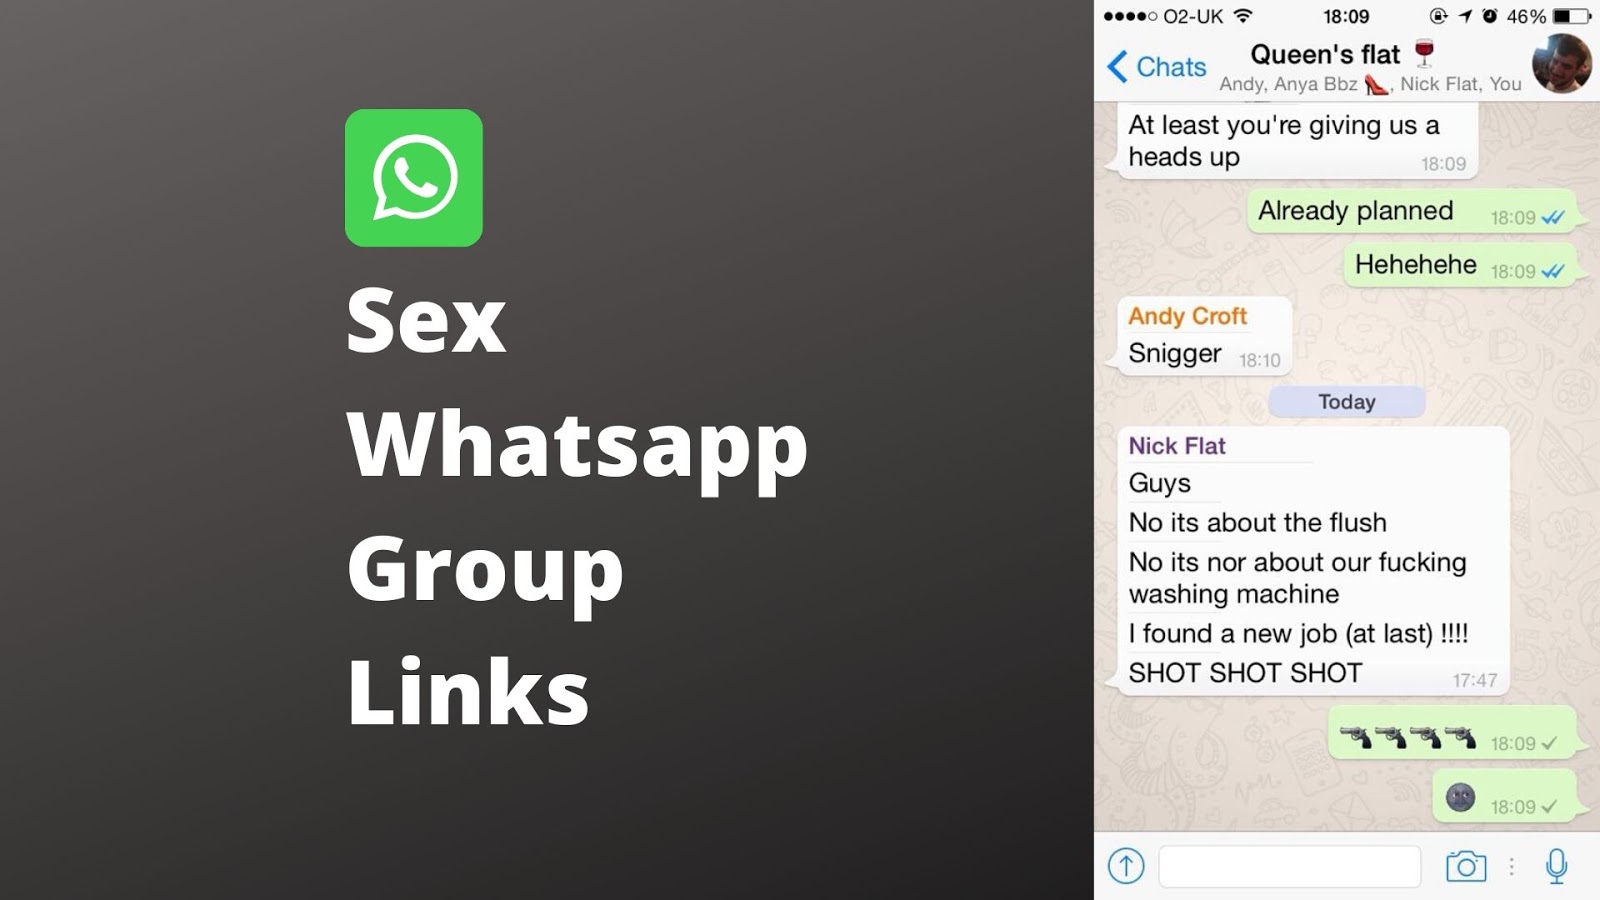 Sexx whatsapp group